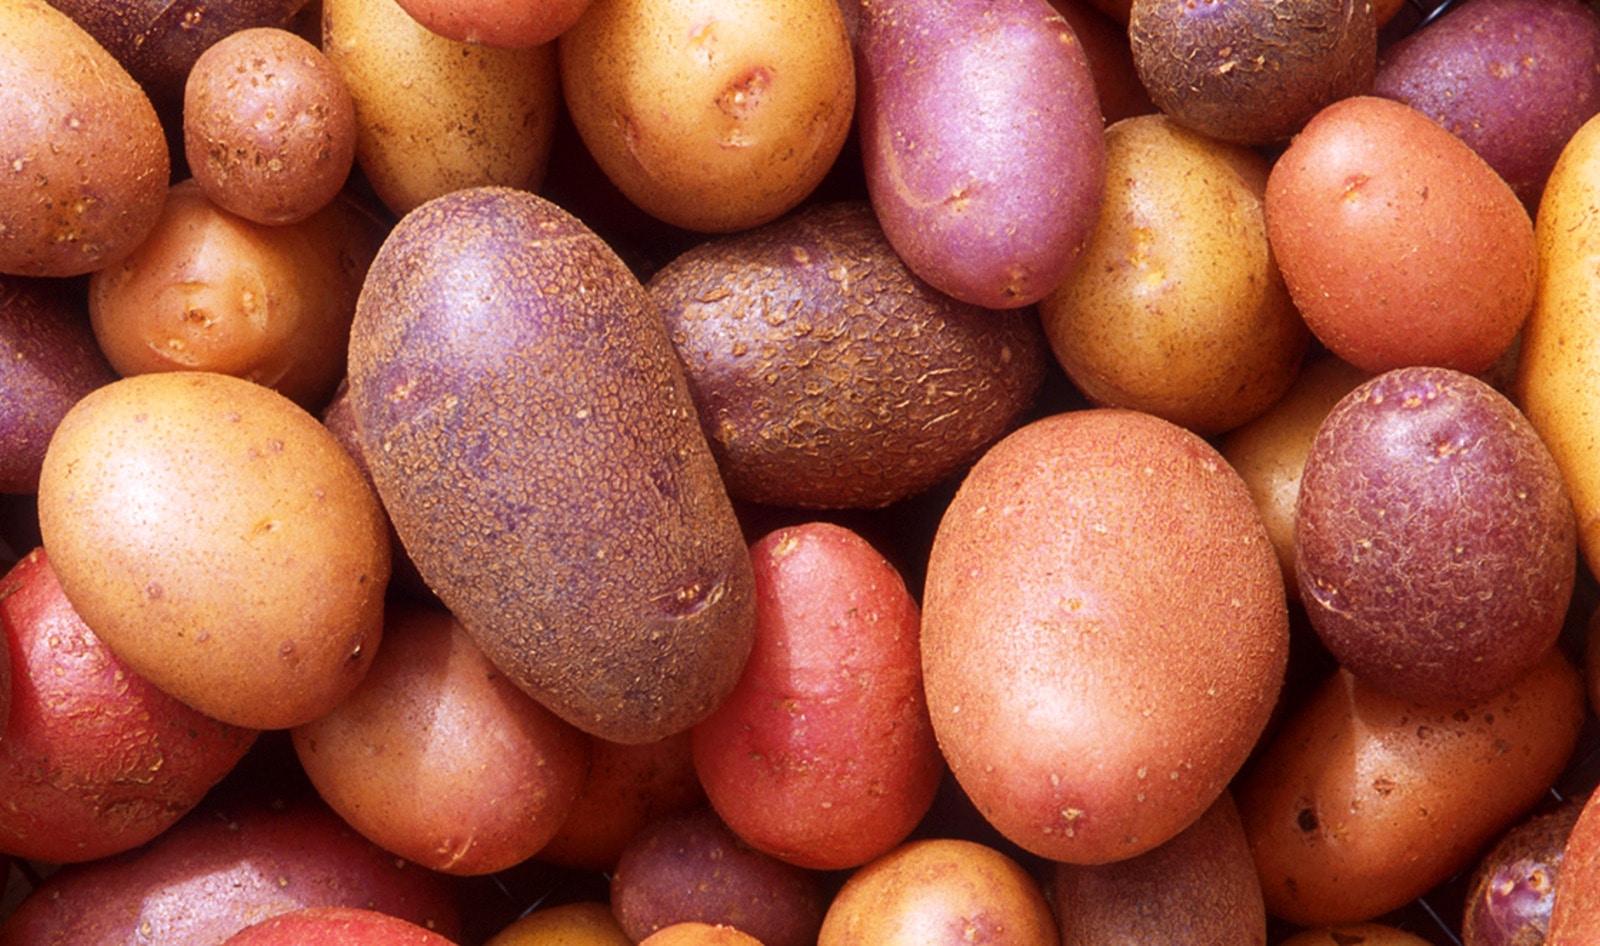 Farm-to-Table Eatery Transforms into Vegan Baked-Potato Shop